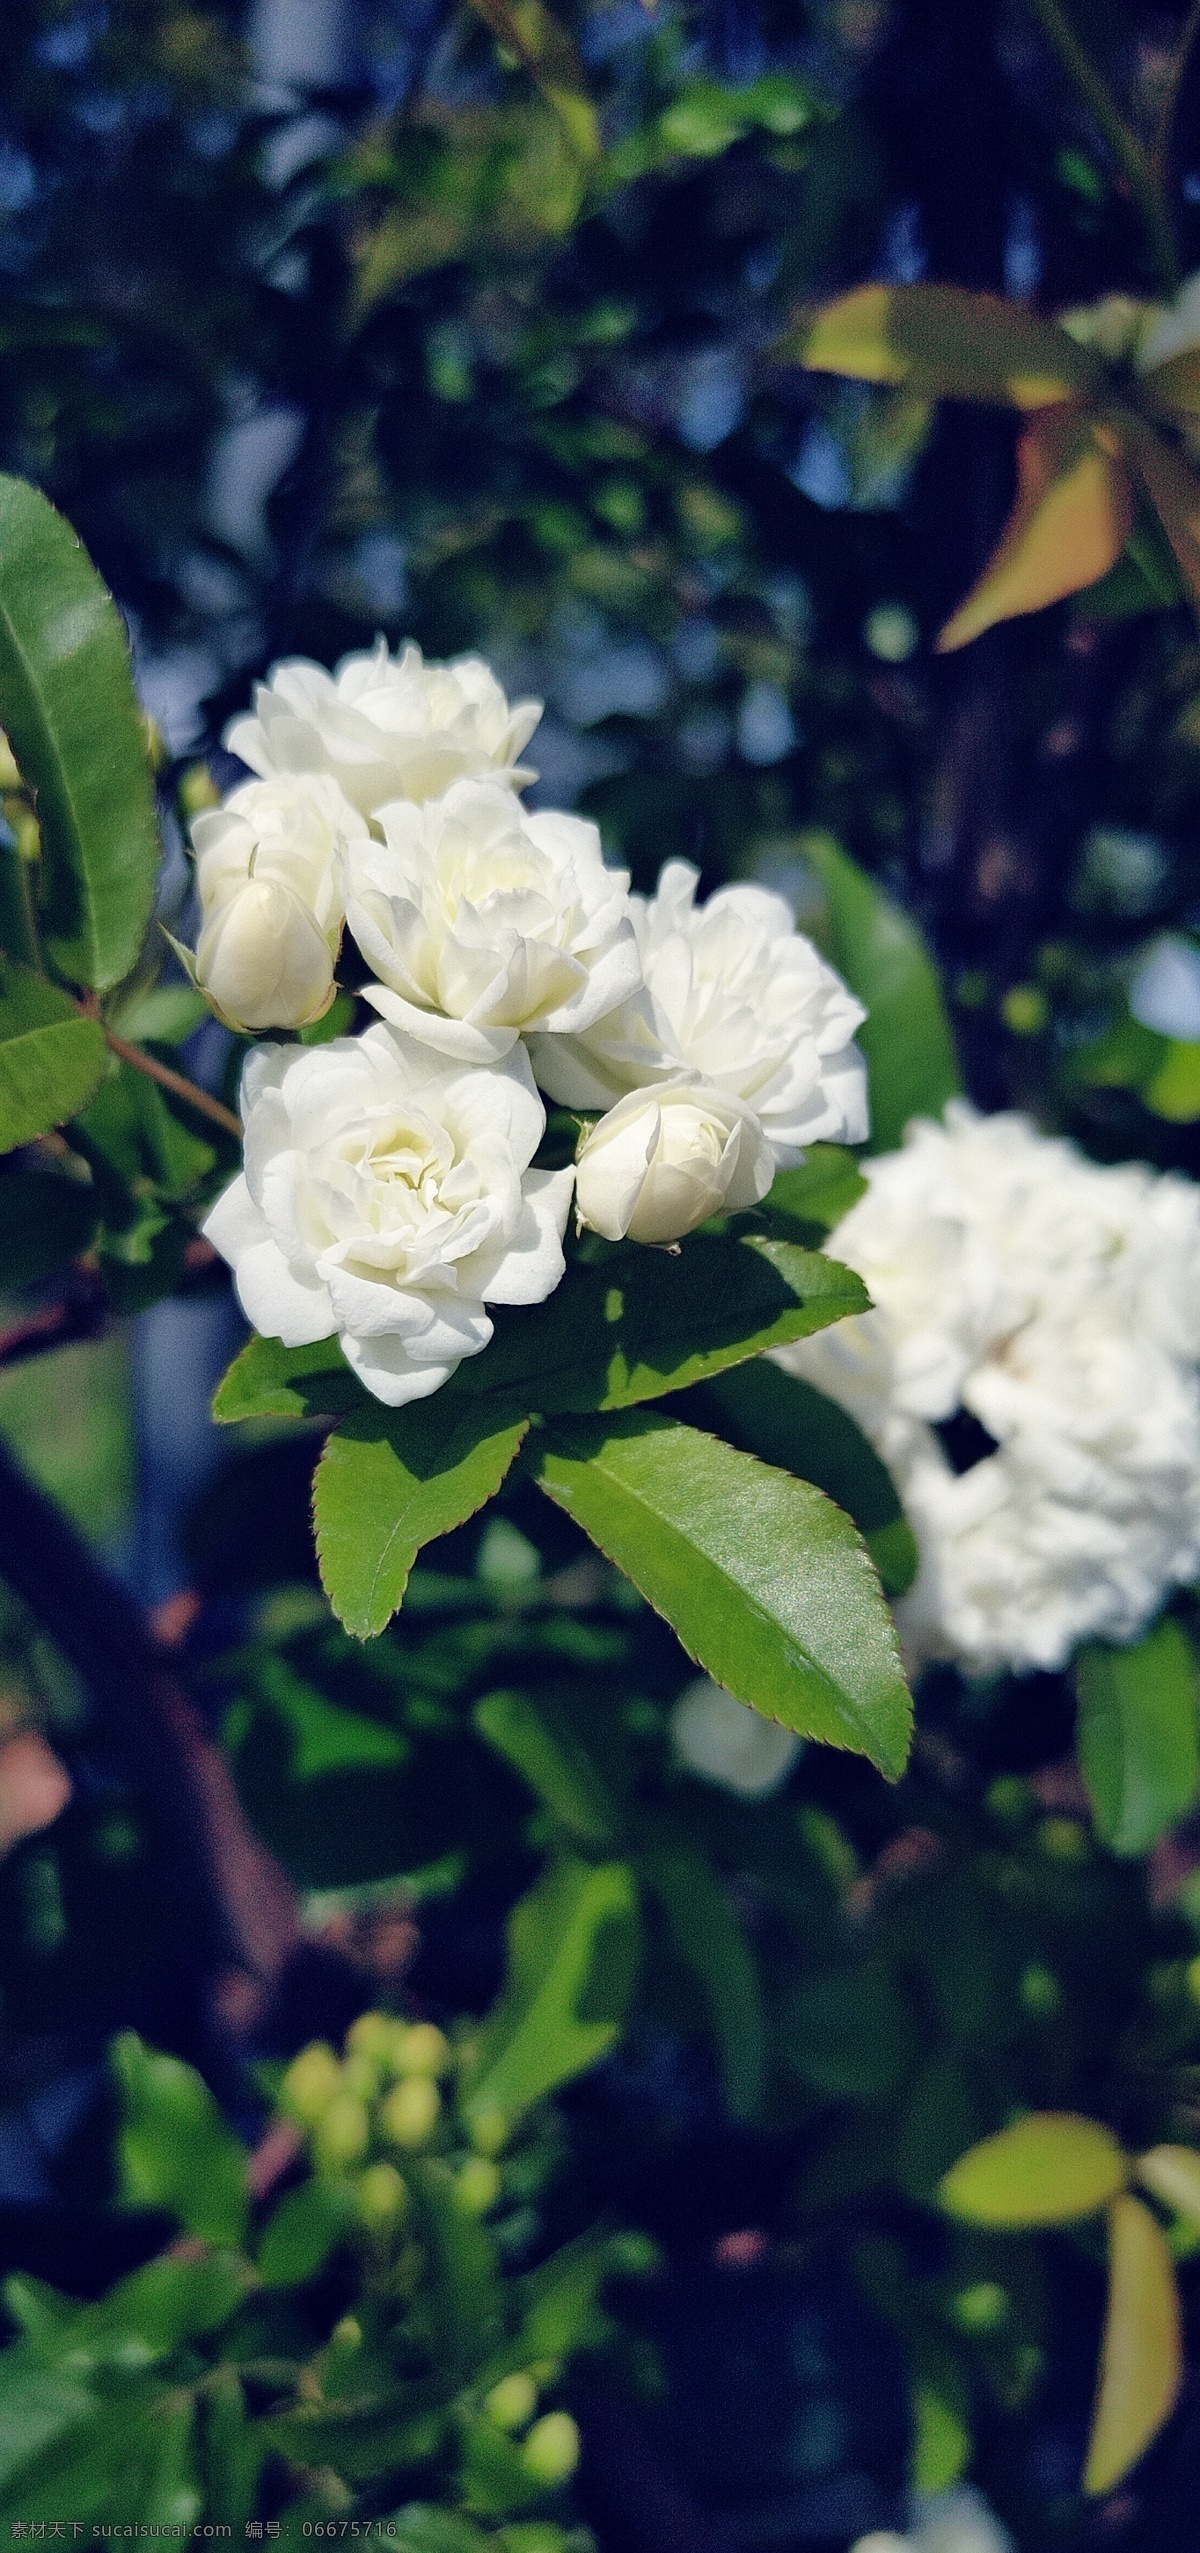 白杜 鹃 花白 樱花 不确定 白色 花 绿叶 树枝 白色花 自然景观 自然风景